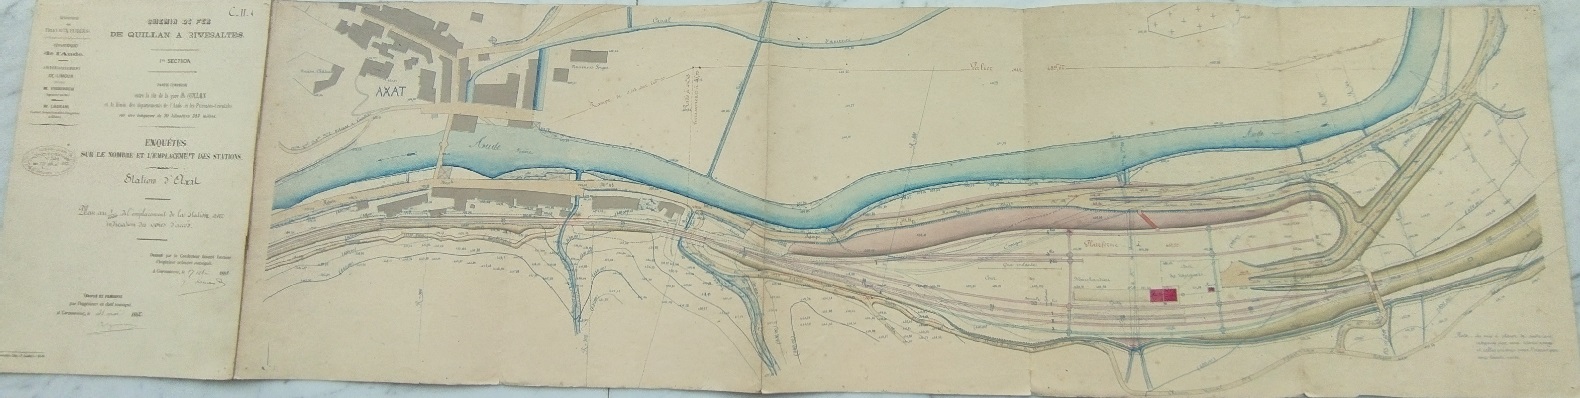 détail du plan du 19 juin 1880 - général